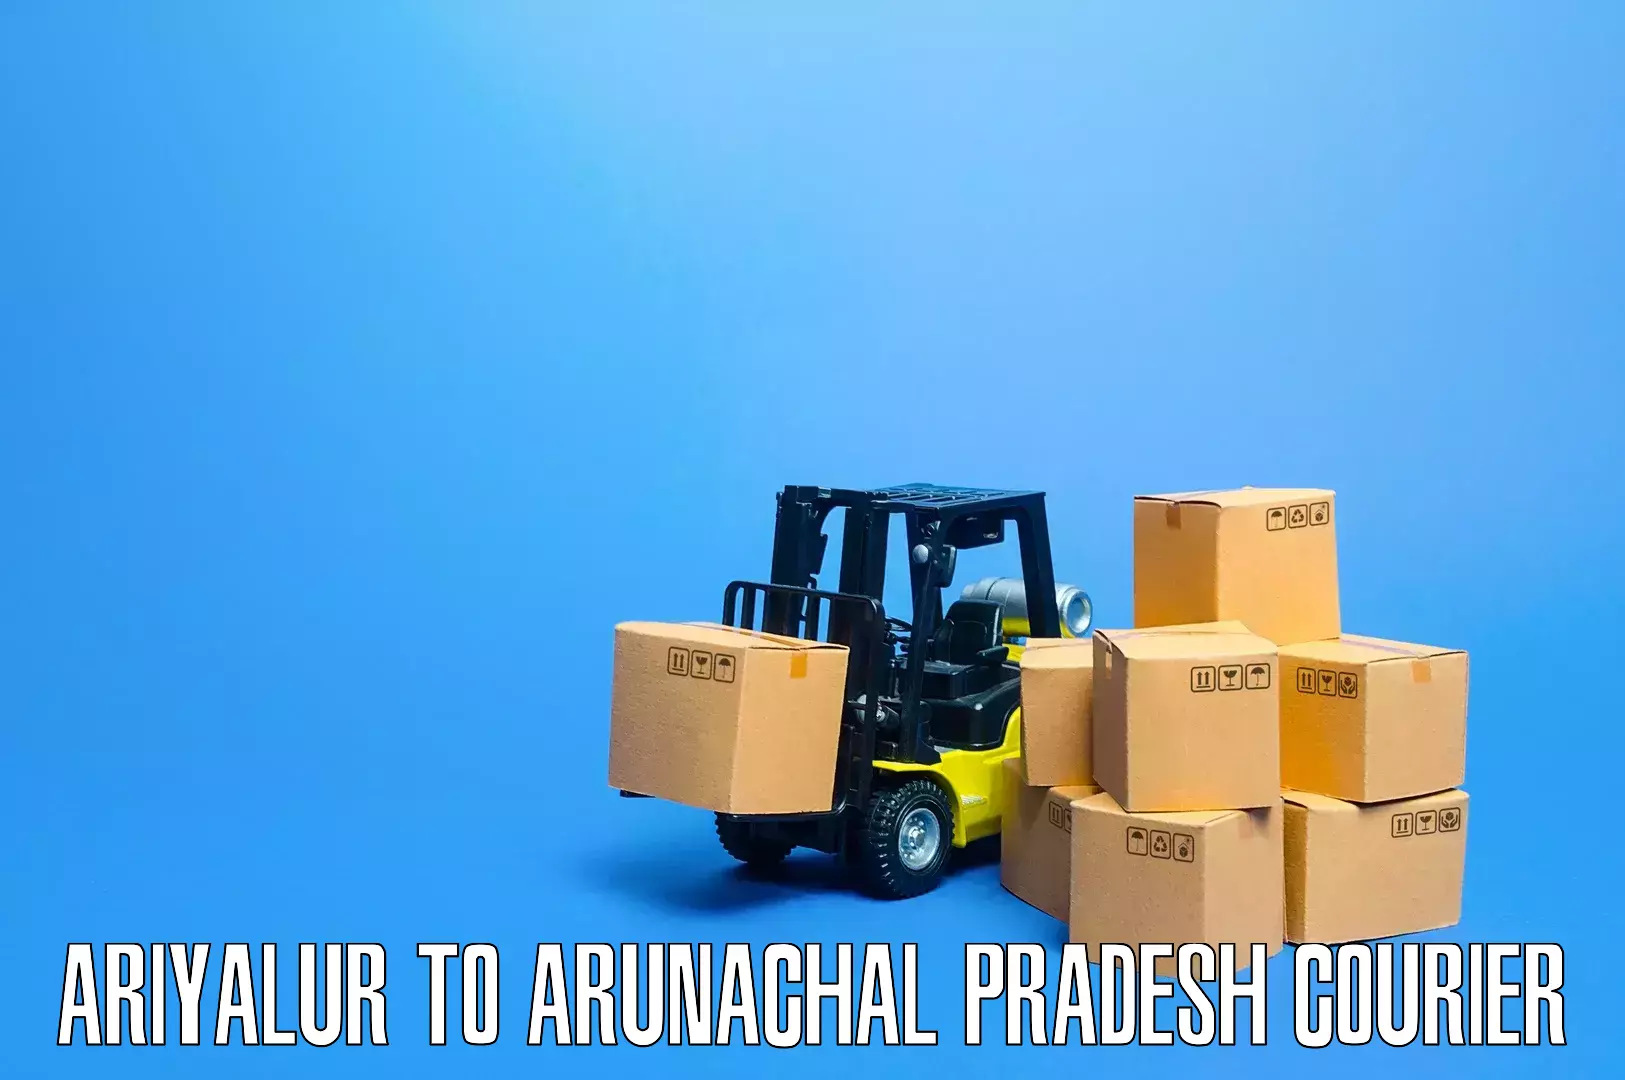 Residential moving experts Ariyalur to Arunachal Pradesh